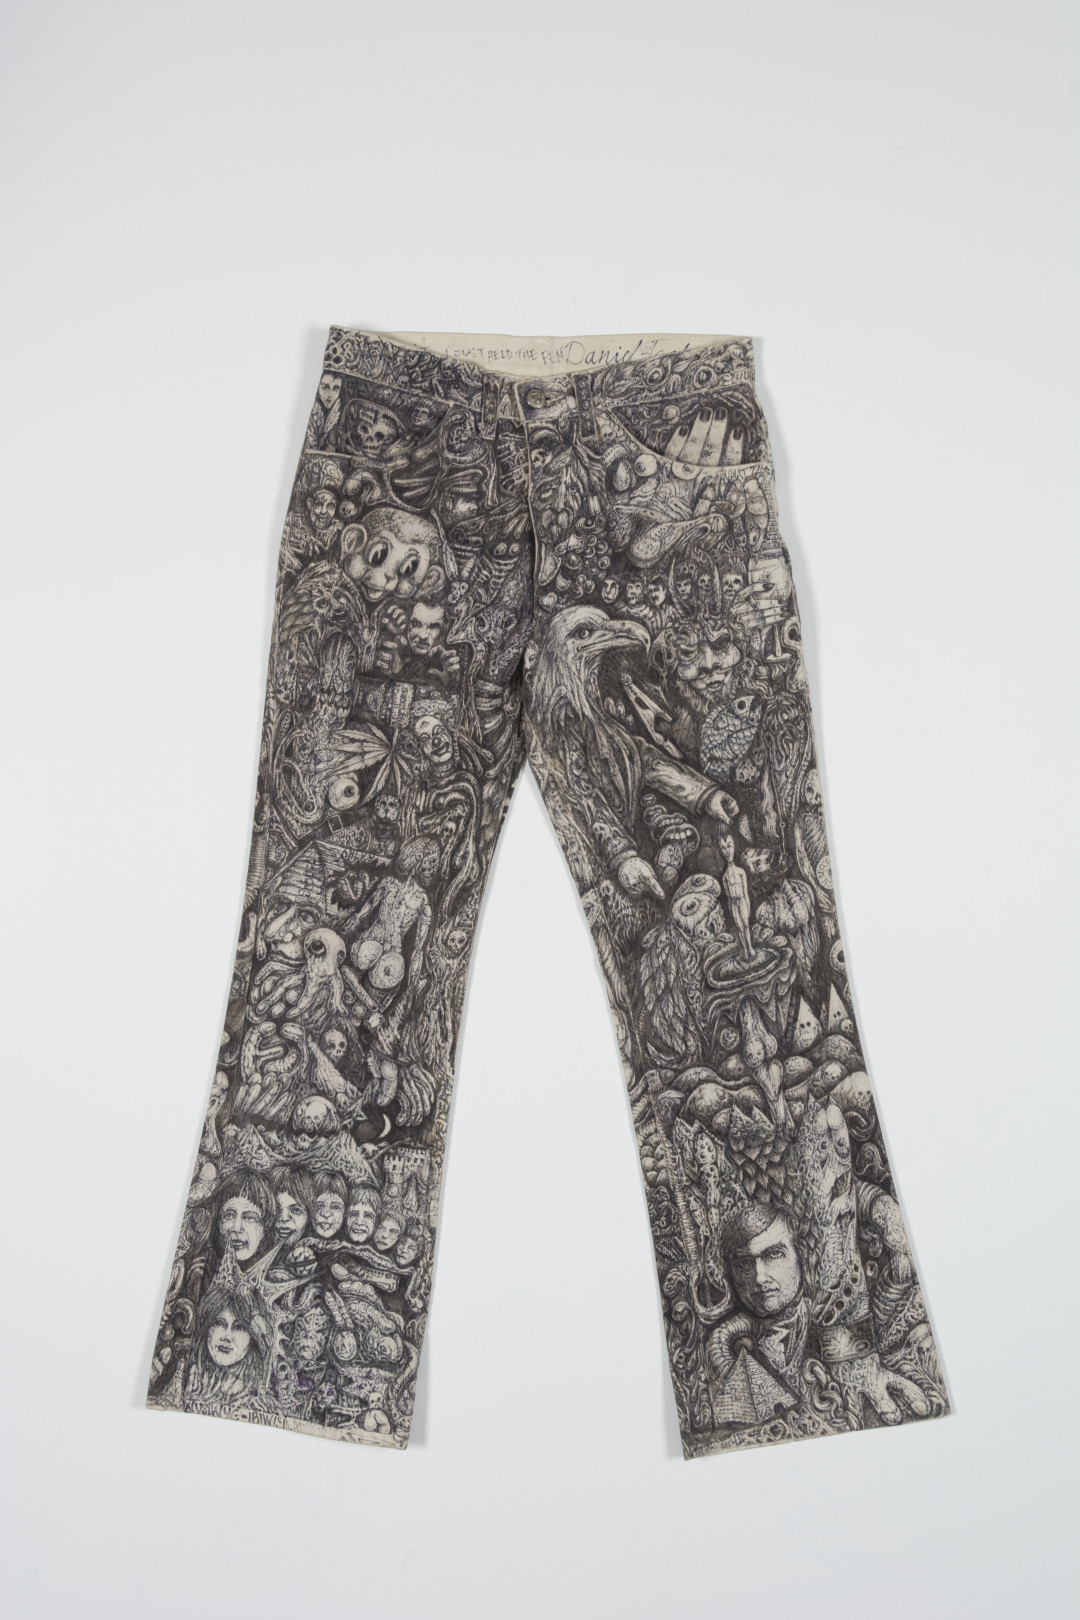 Prison Pants, 1979